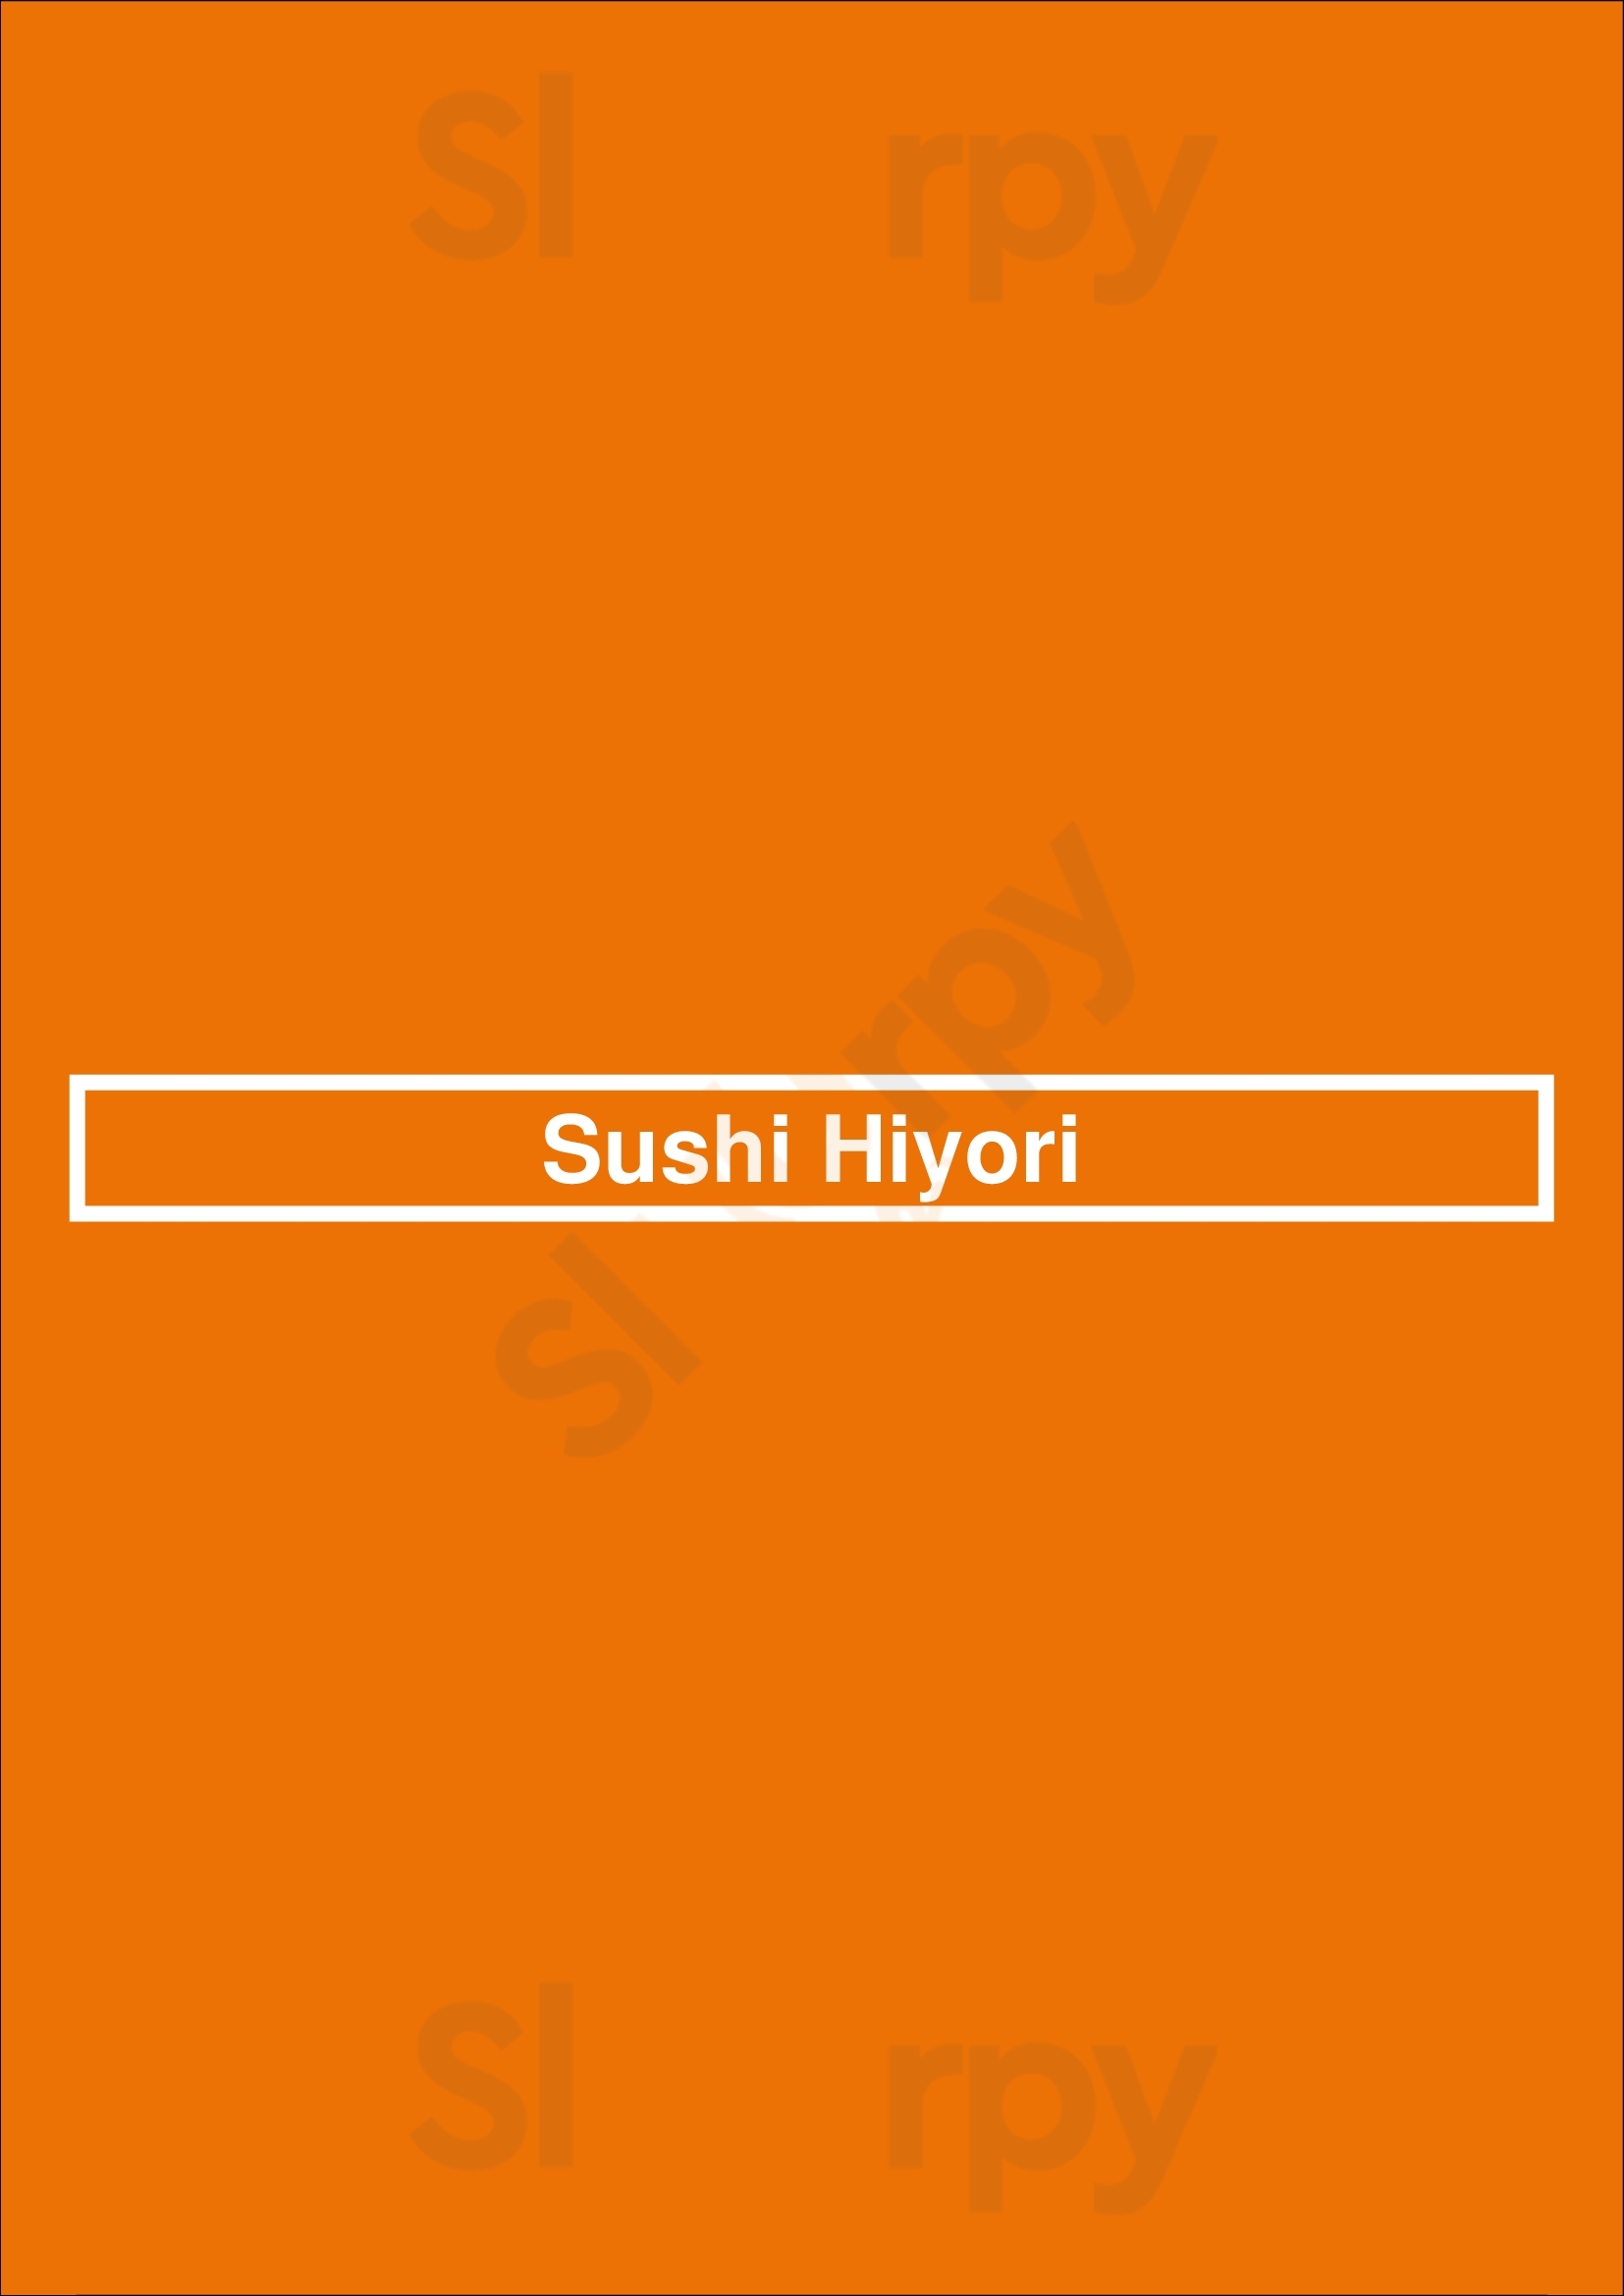 Sushi Hiyori Vancouver Menu - 1